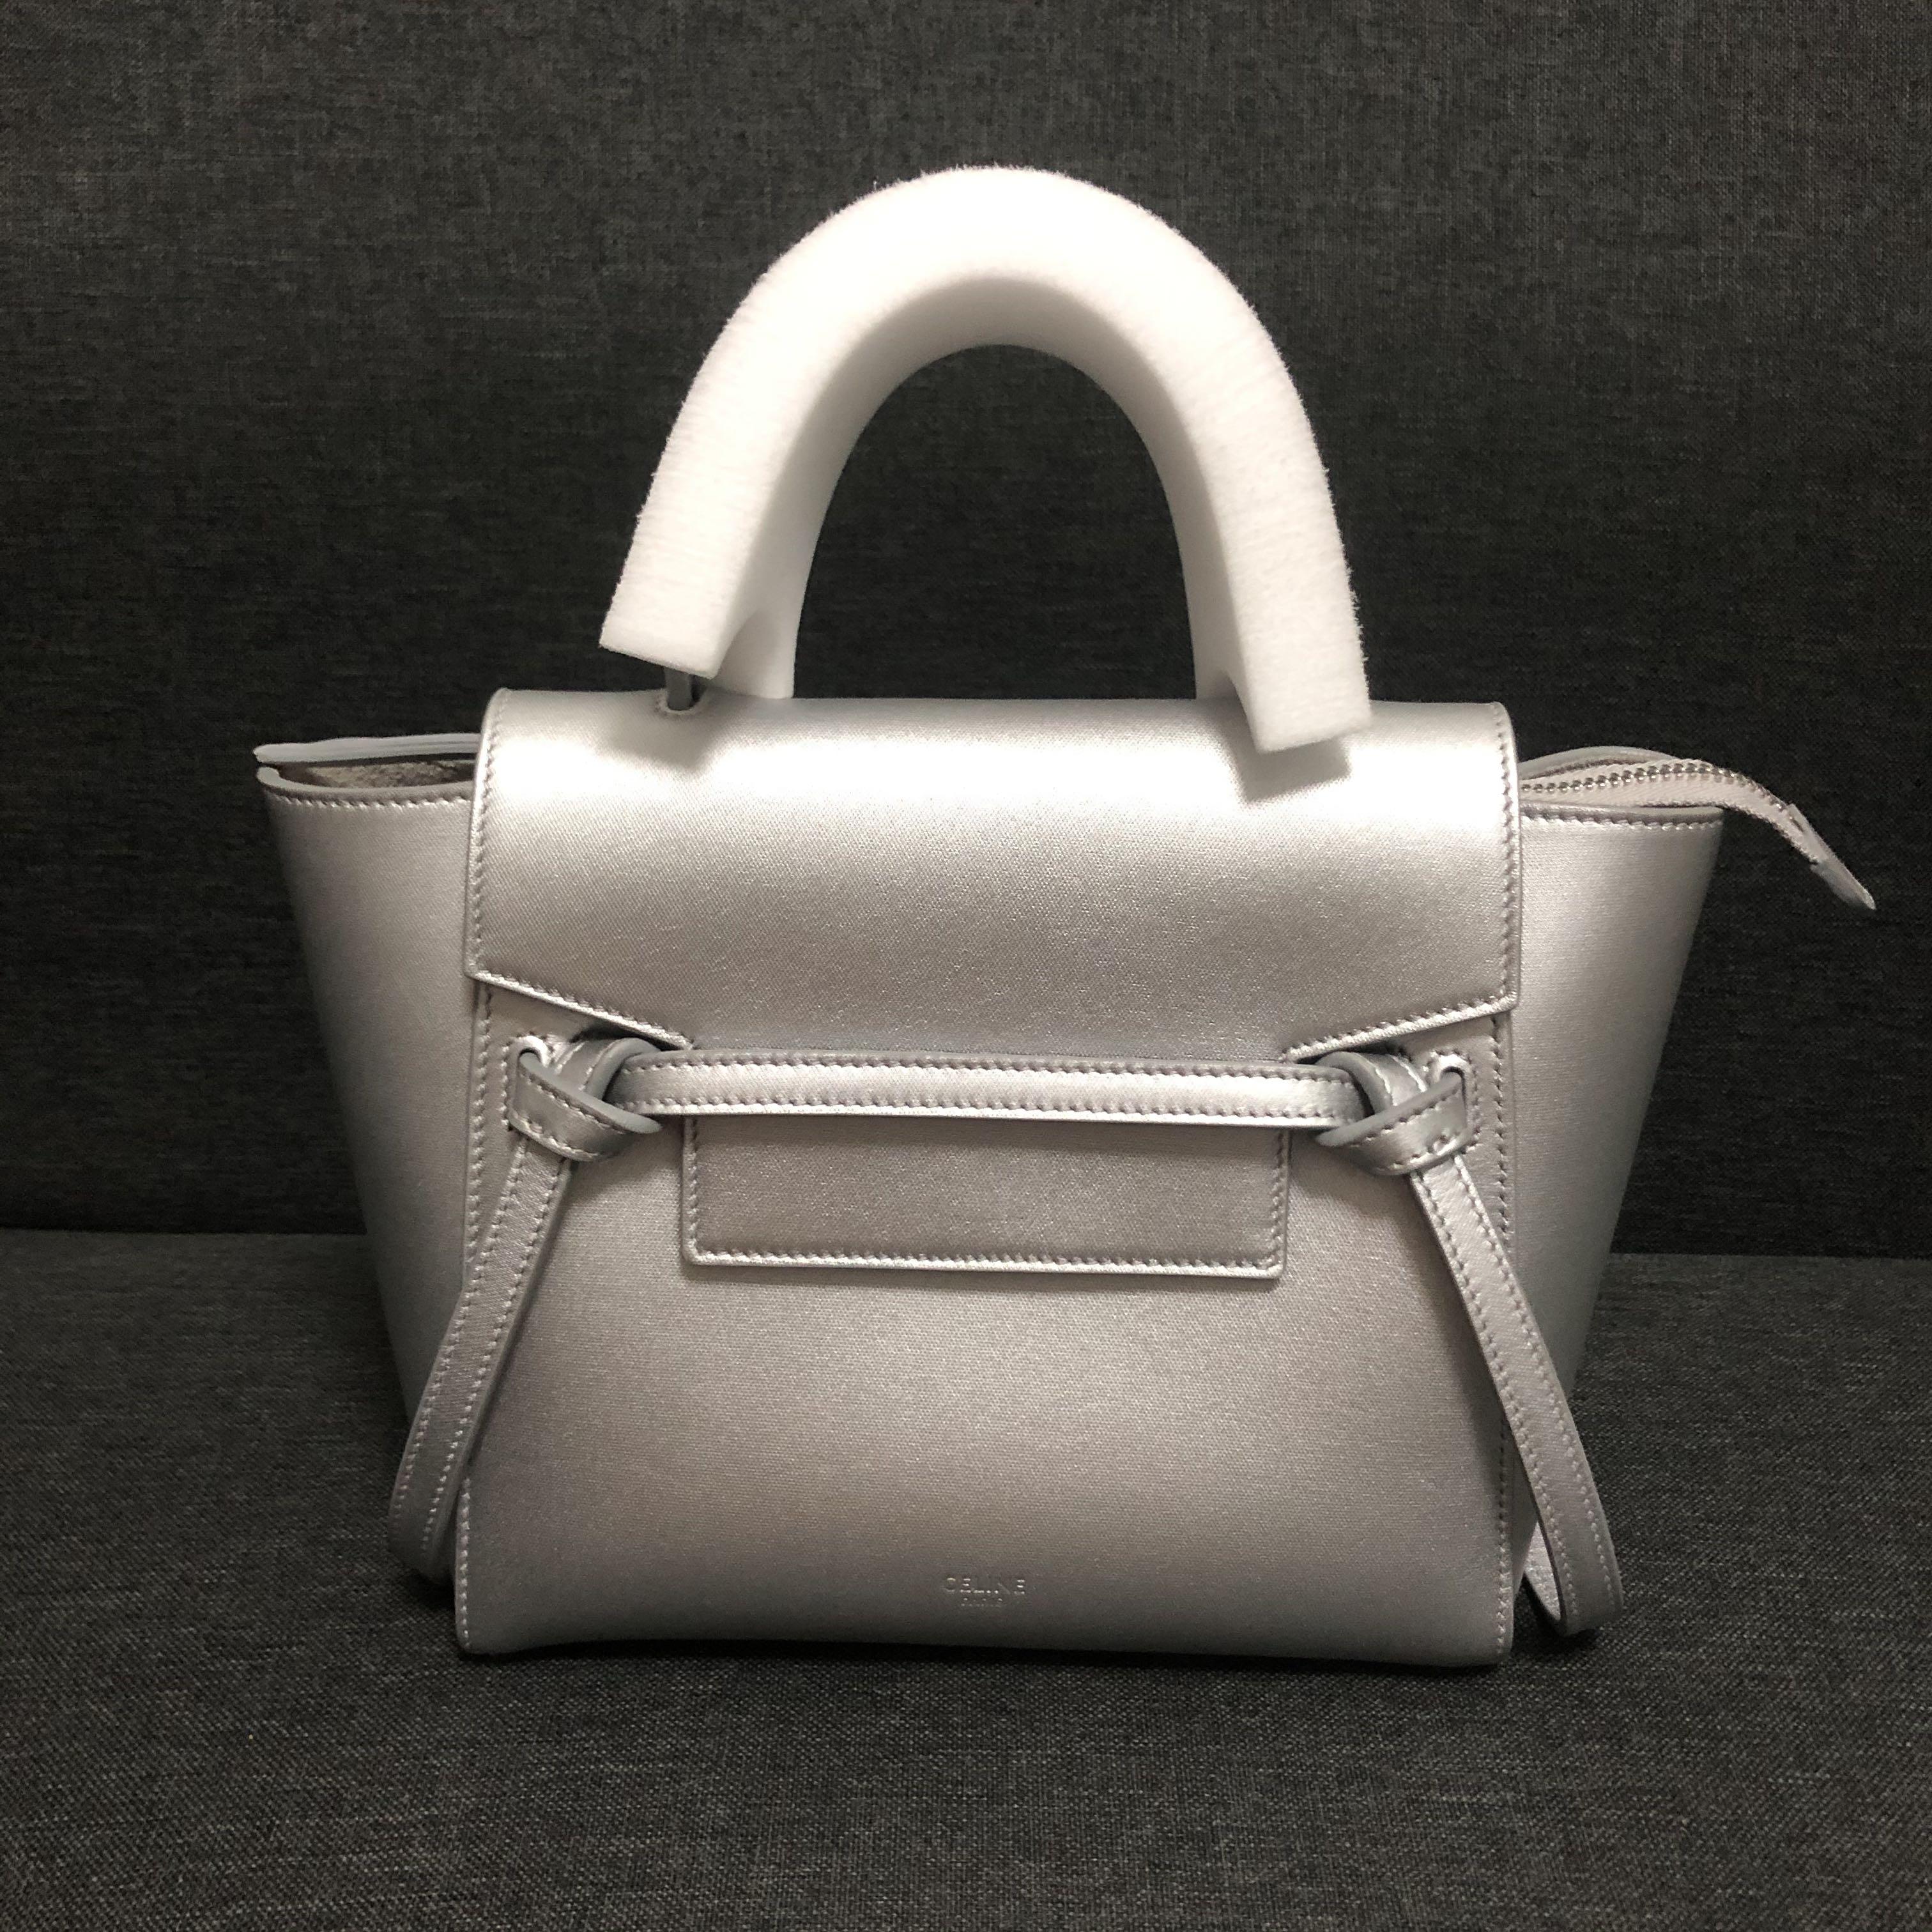 Celine Nano Belt Bag 10.10 SALE ONLY!, Women's Fashion, Bags & Wallets,  Cross-body Bags on Carousell